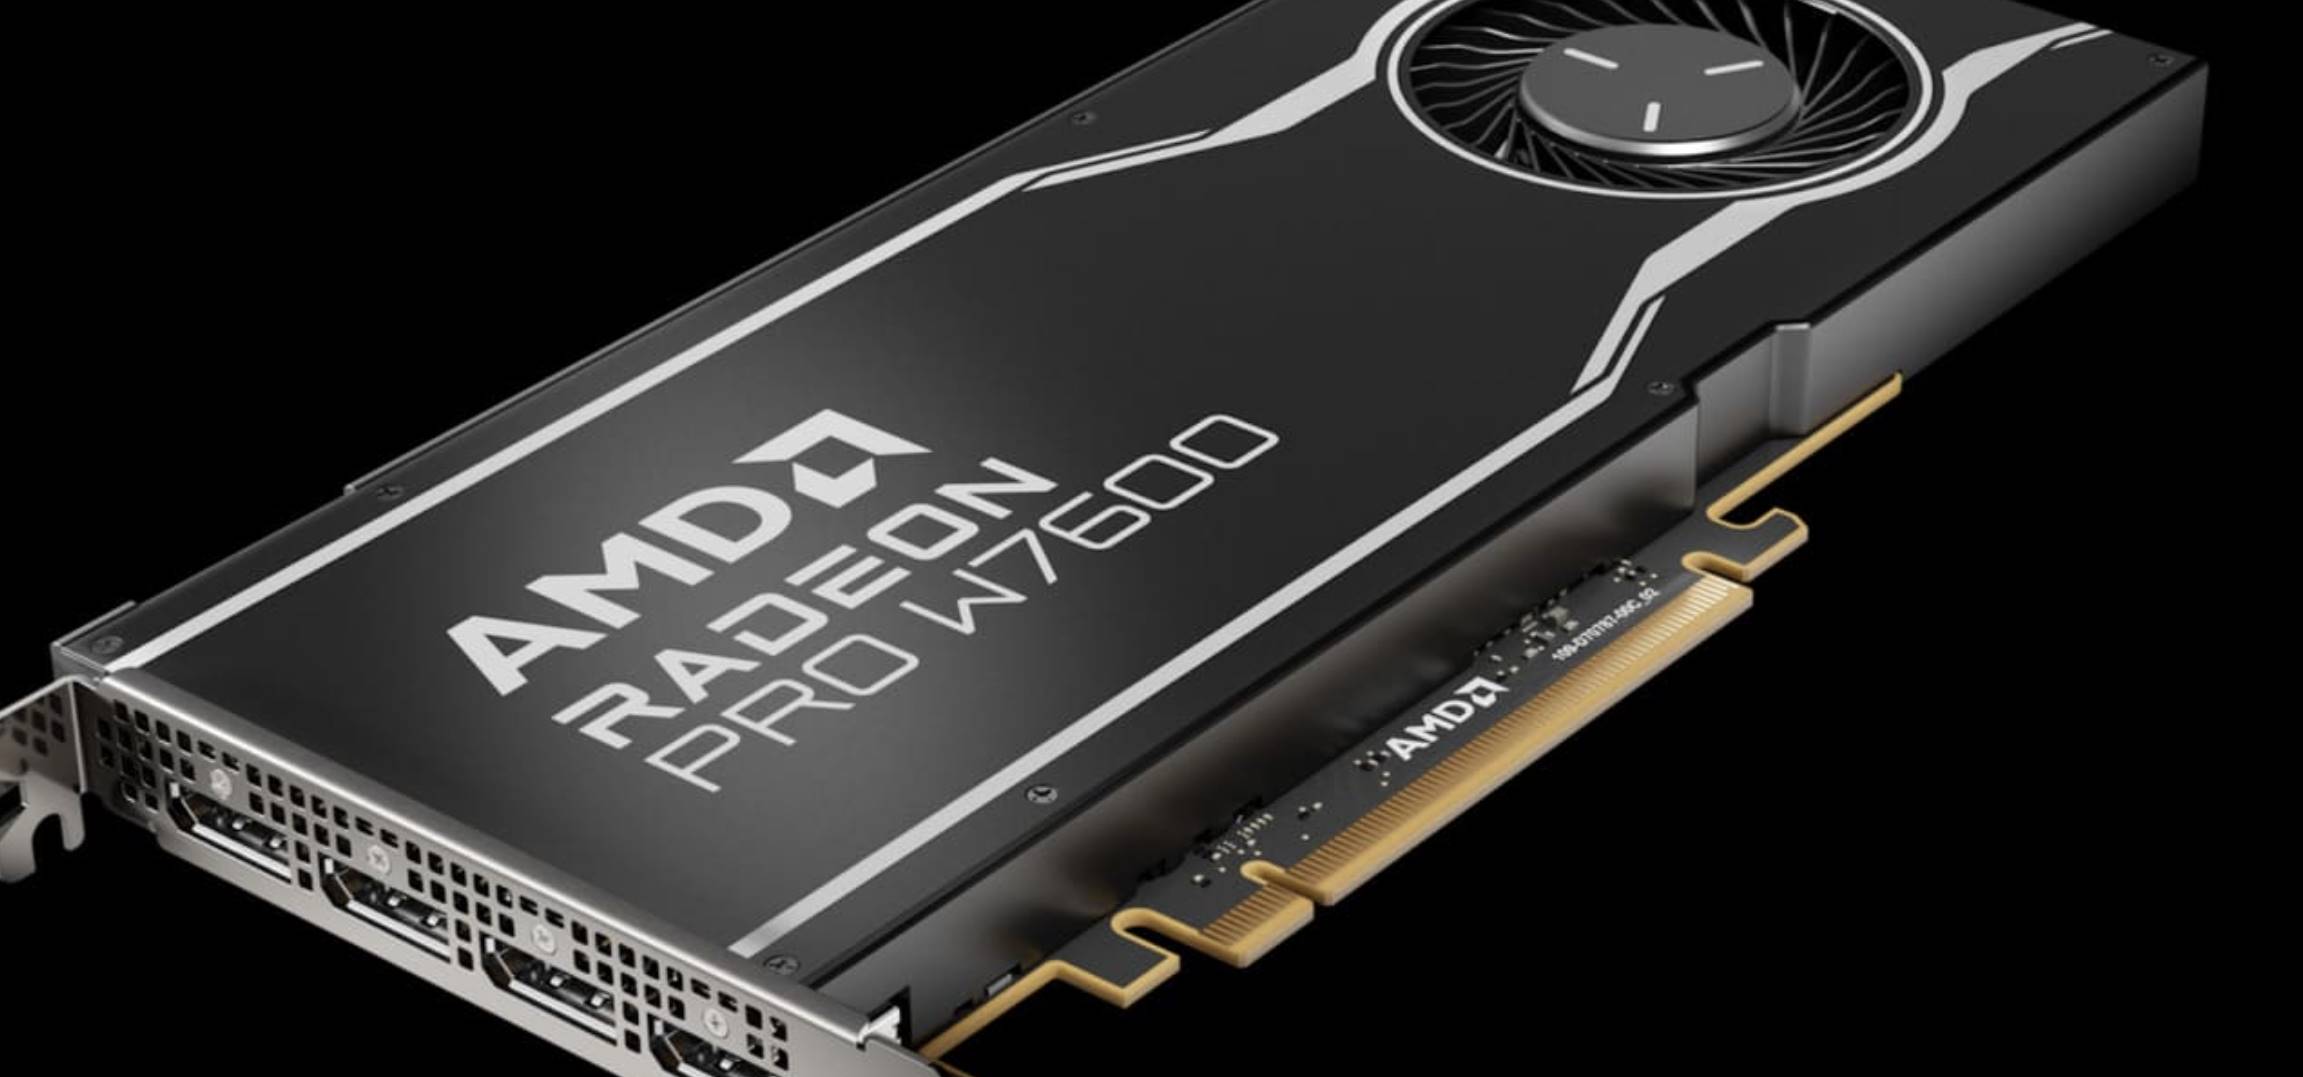 AMD annuncia le Radeon PRO W7600 e W7500 